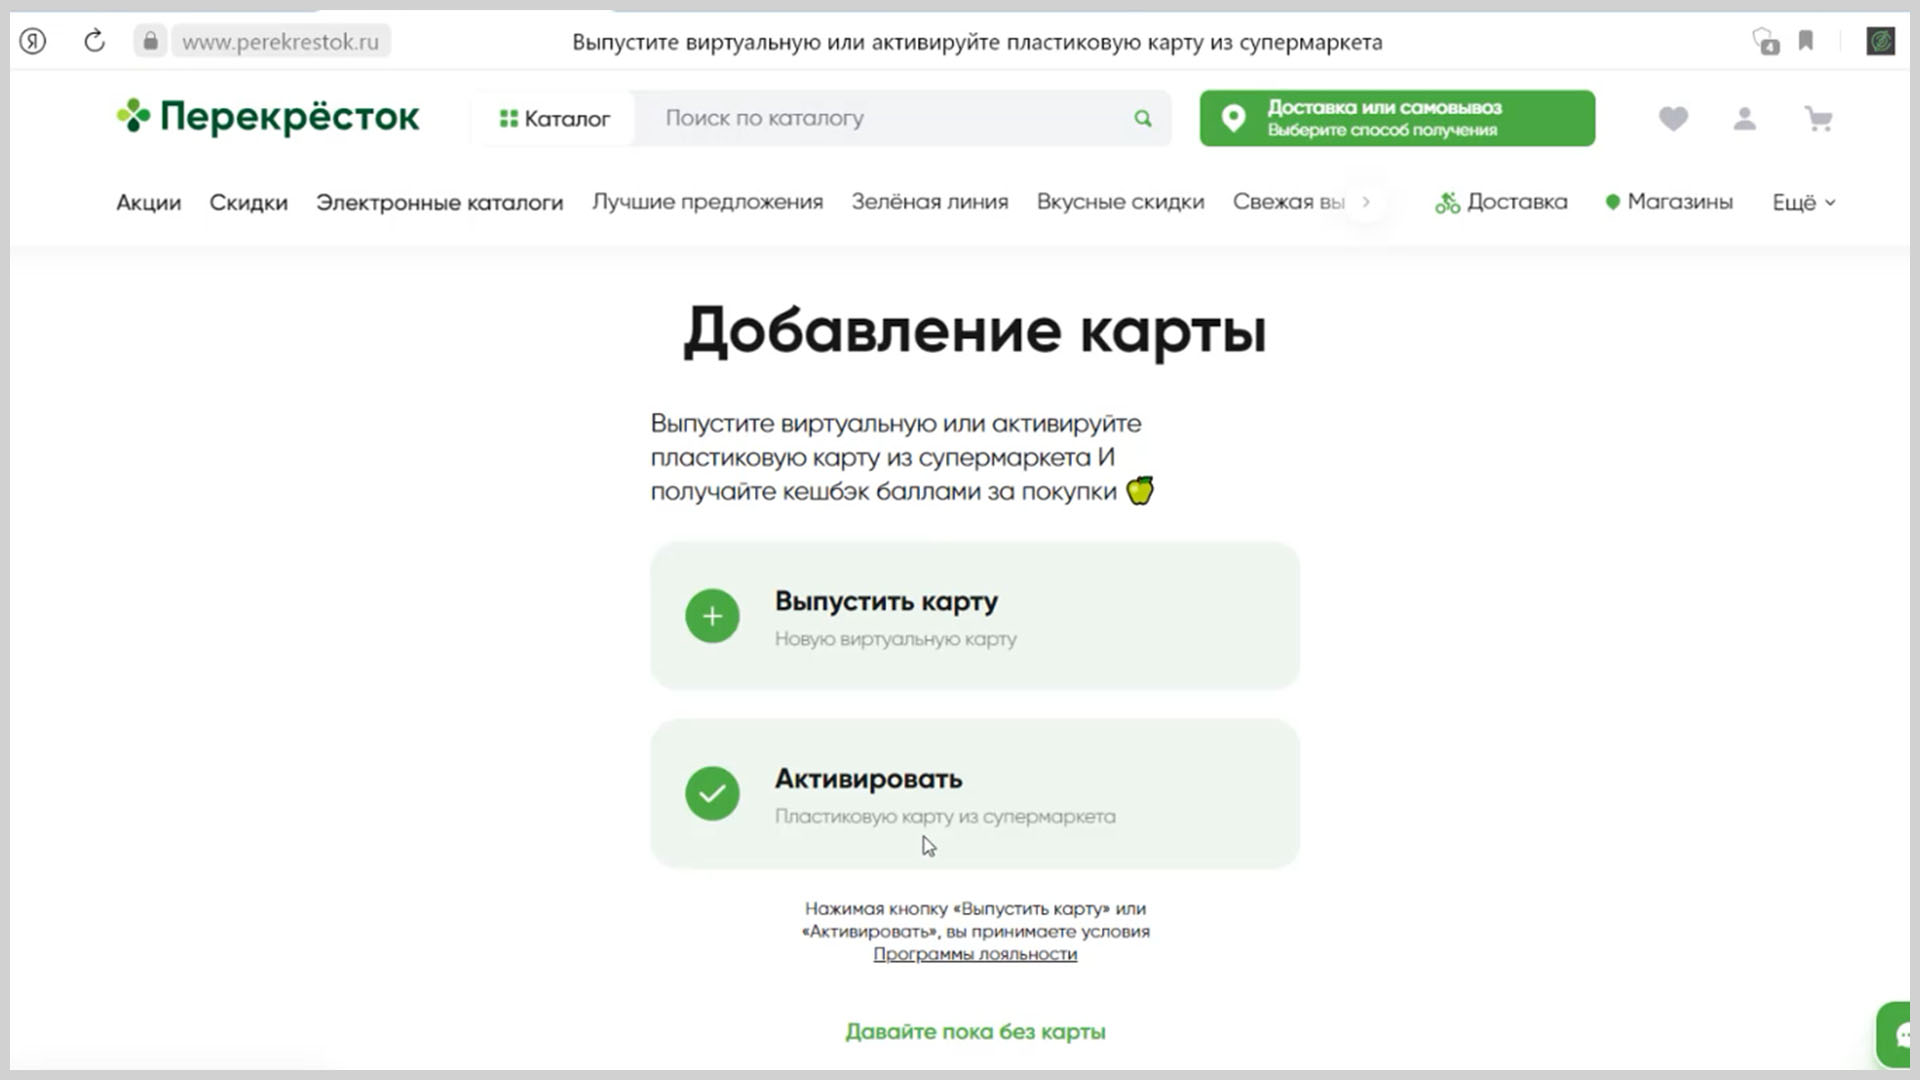 Страница активации или выпуска новой карты на perekrestok.ru.